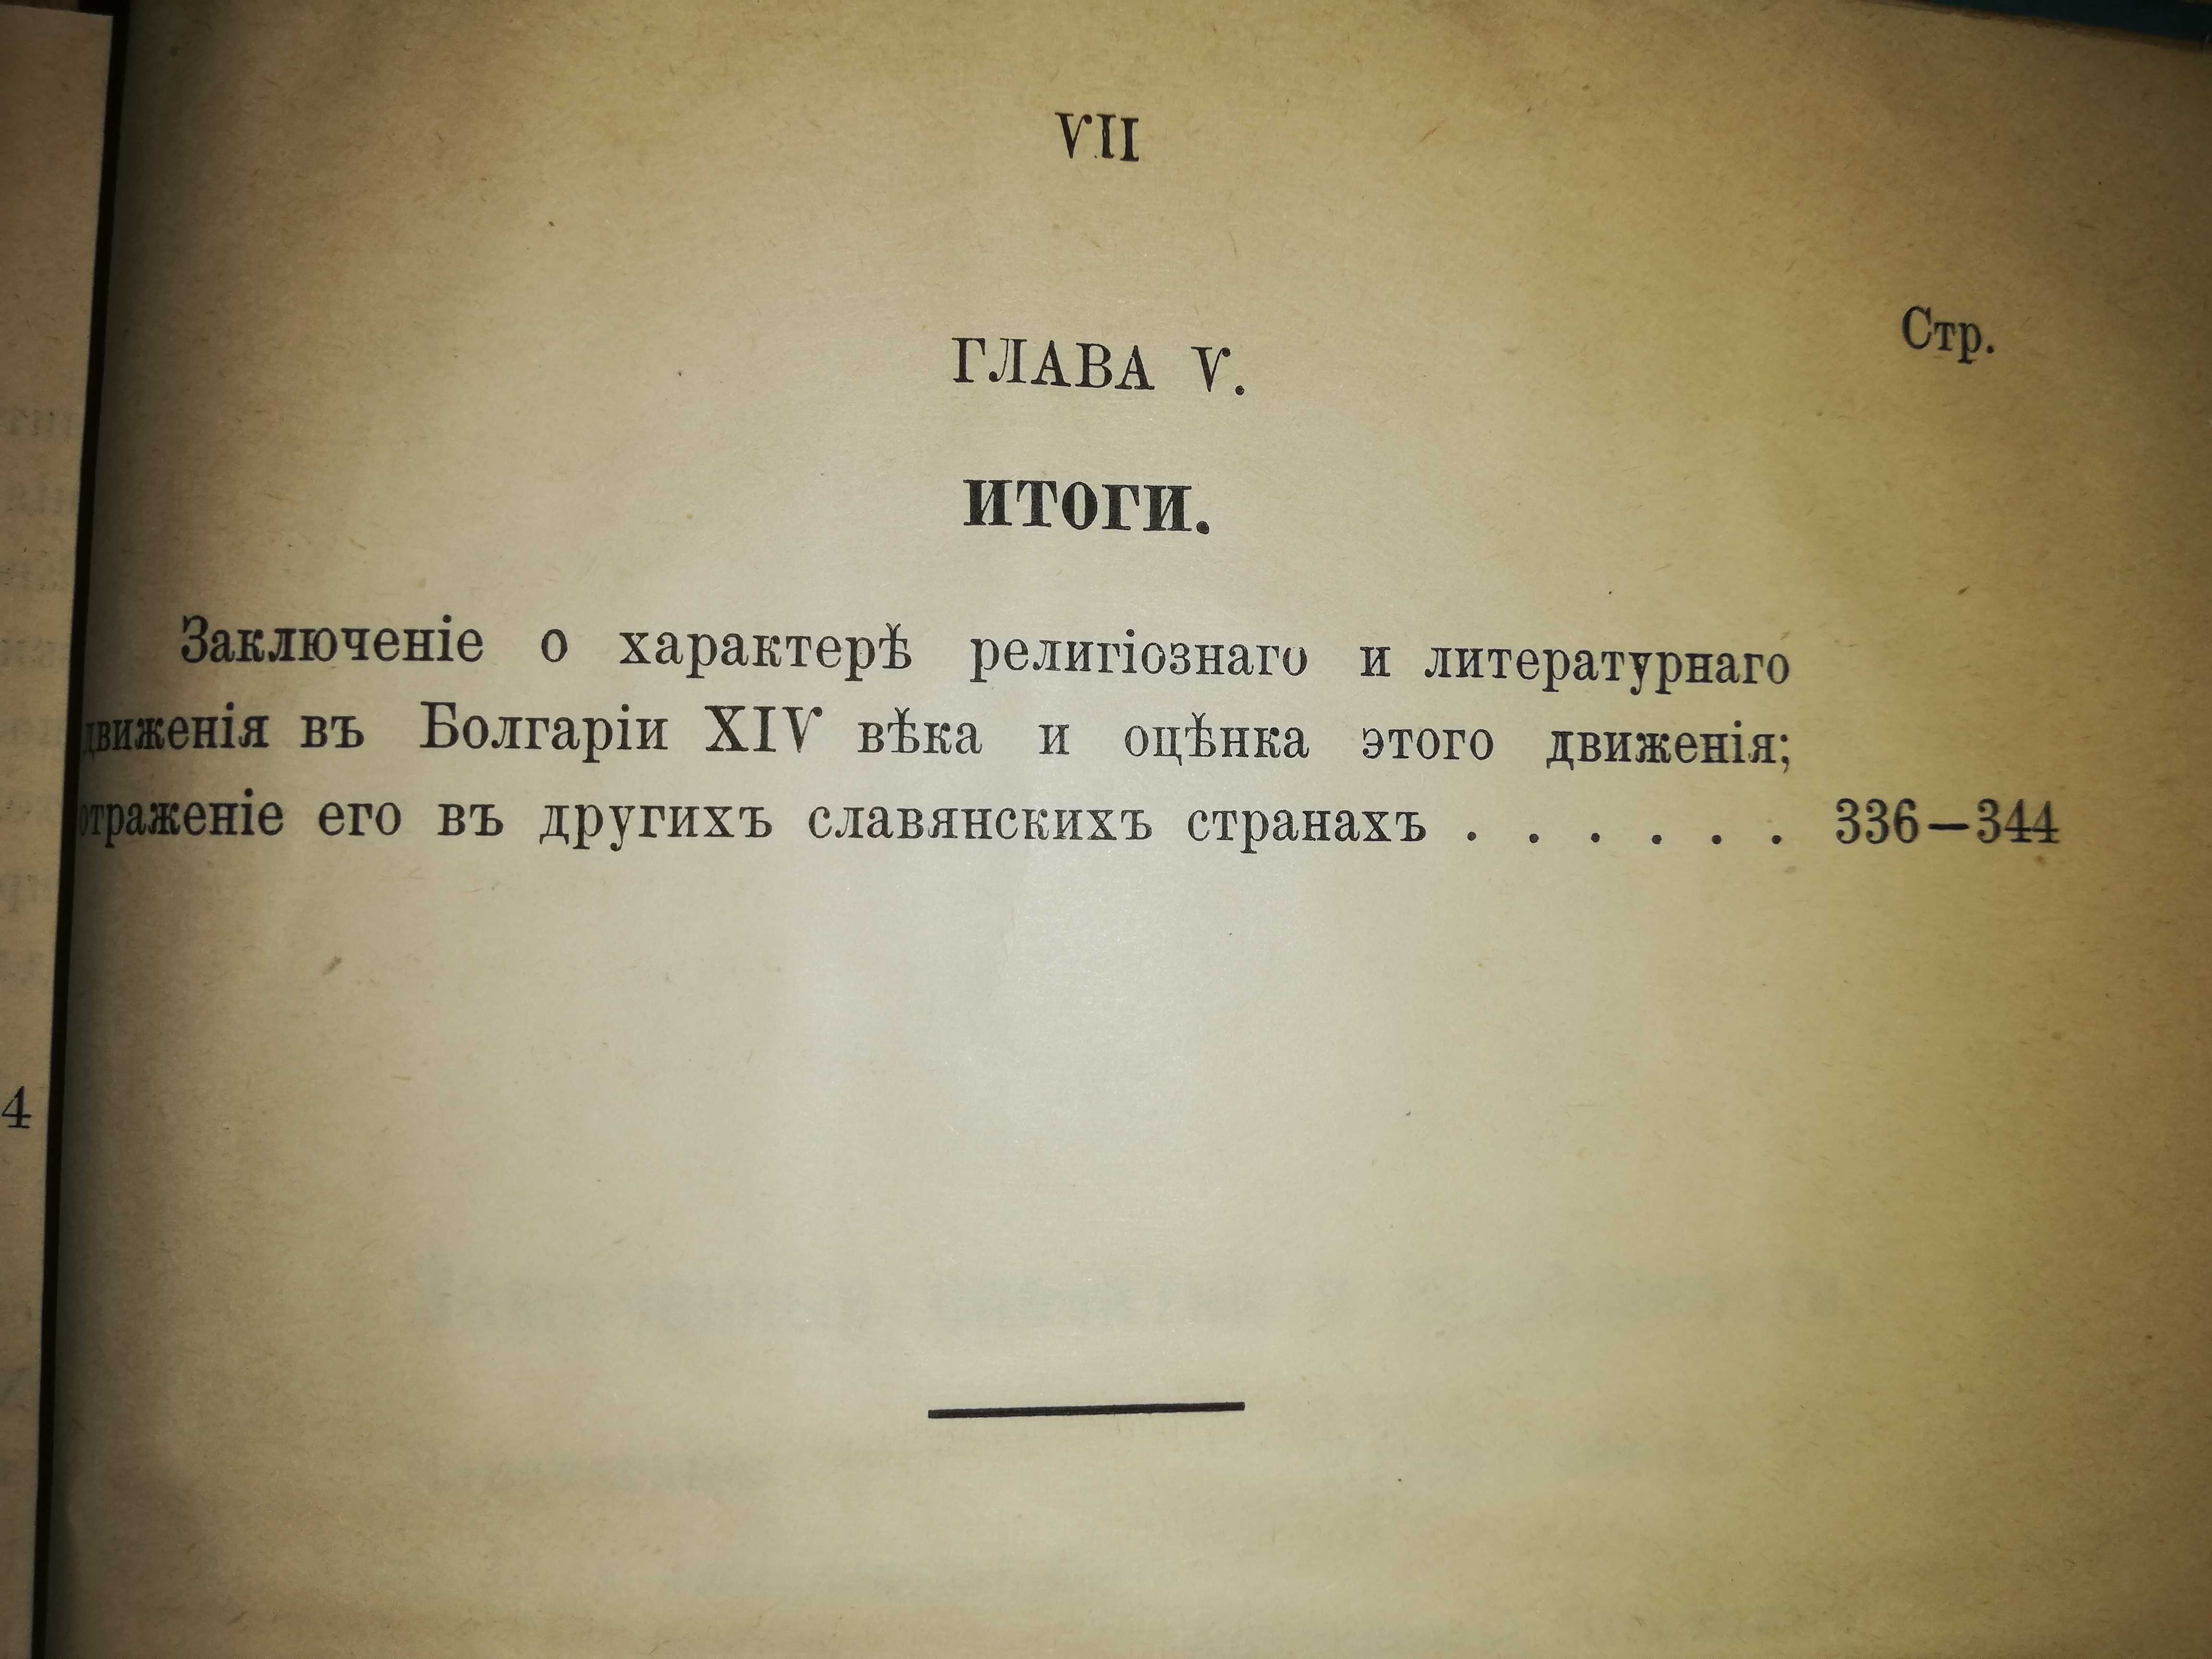 Радченко ''Религиозное и литературное движение в Болгарии'' 1.898г.